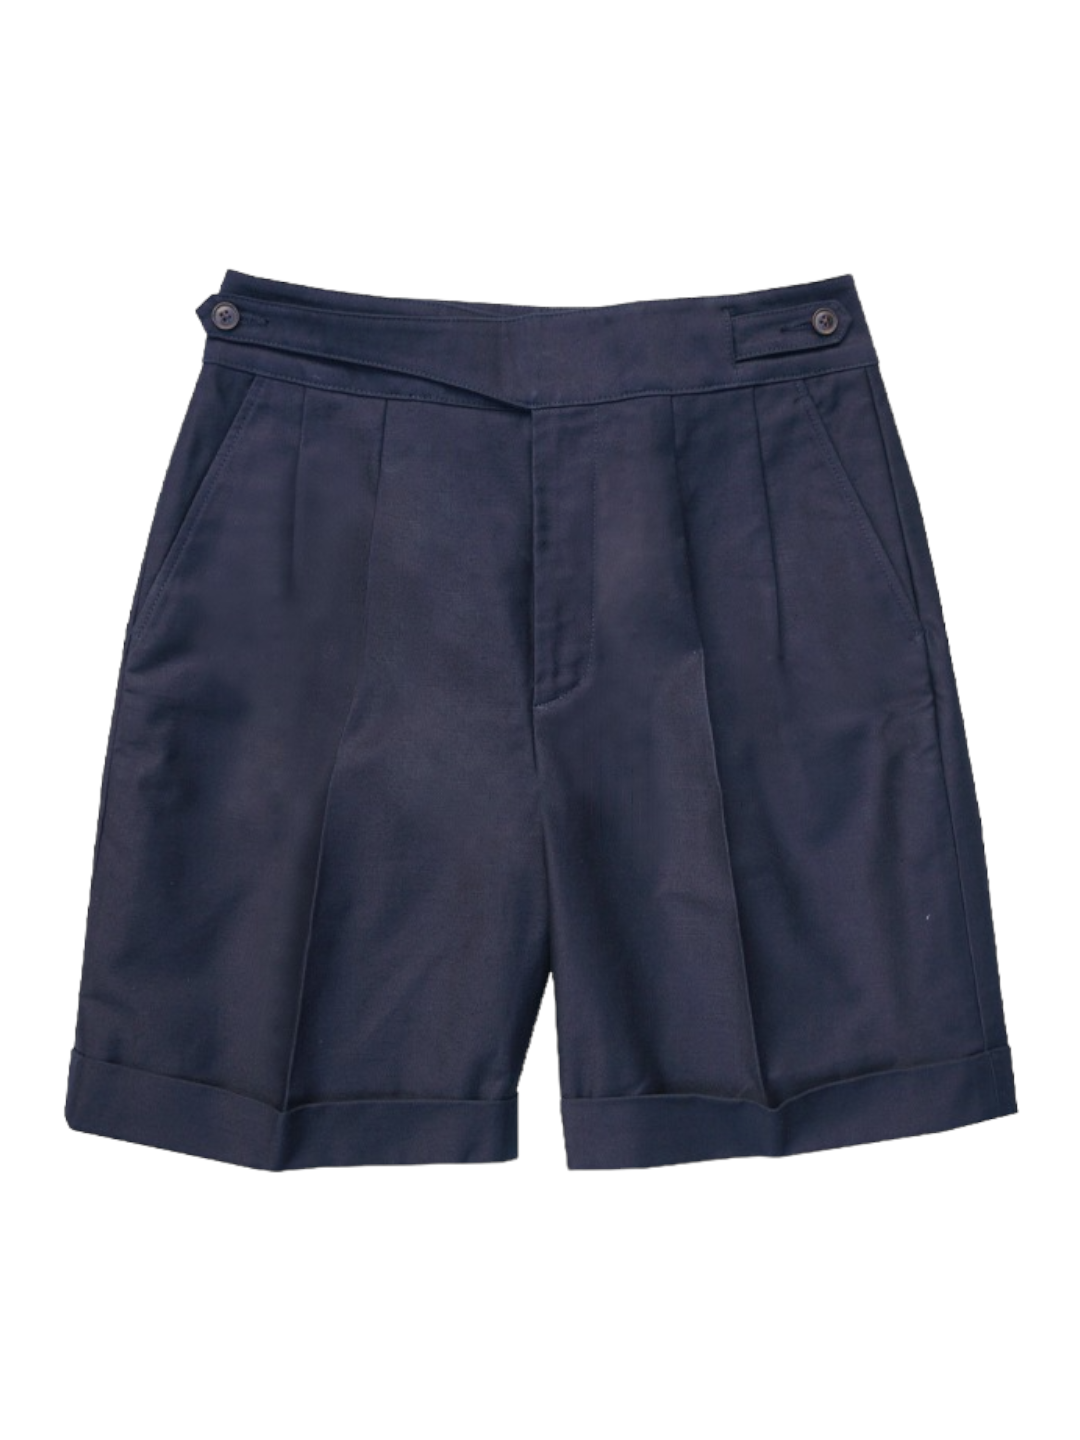 (BYU) Gurkha Shorts (Navy)